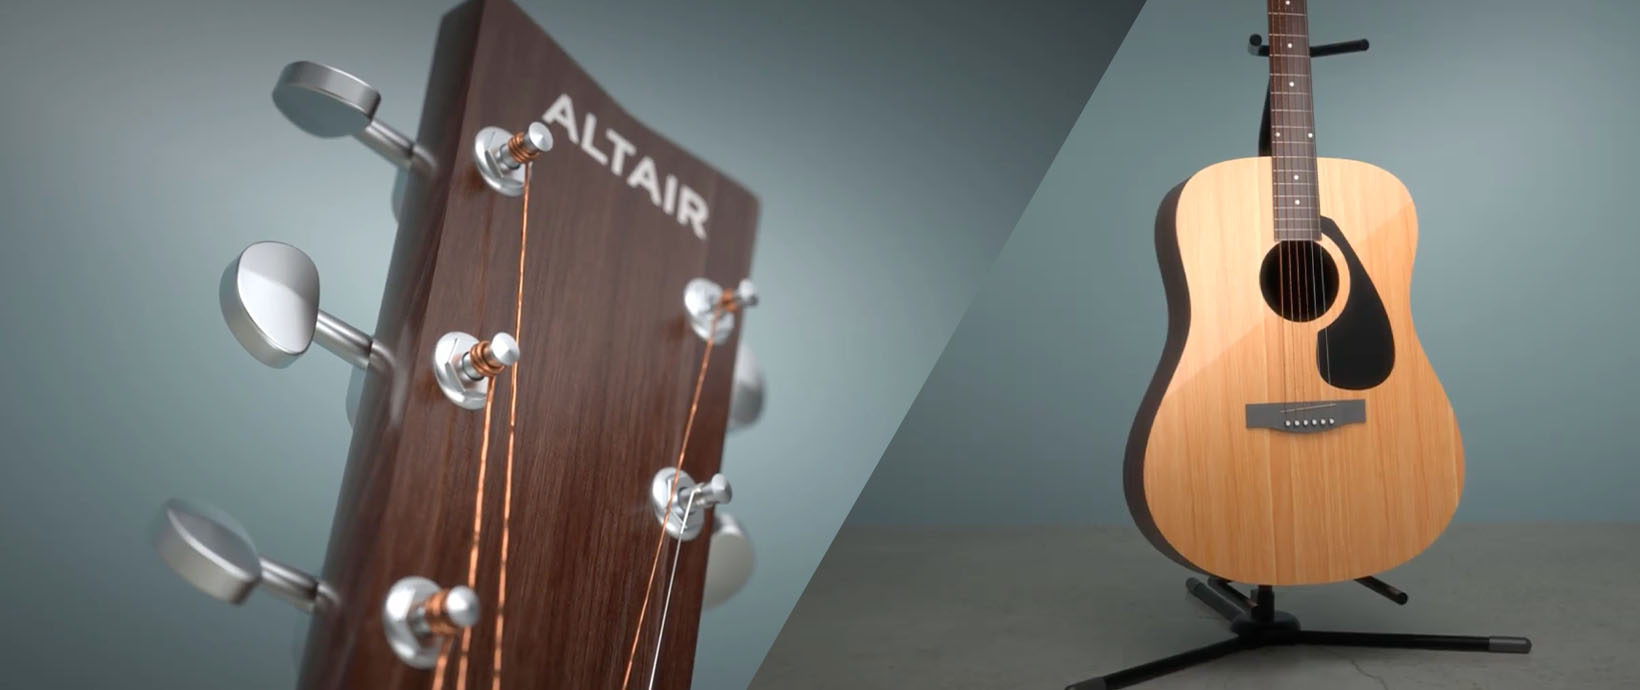 Altair Inspire Studio Strikes a Chord